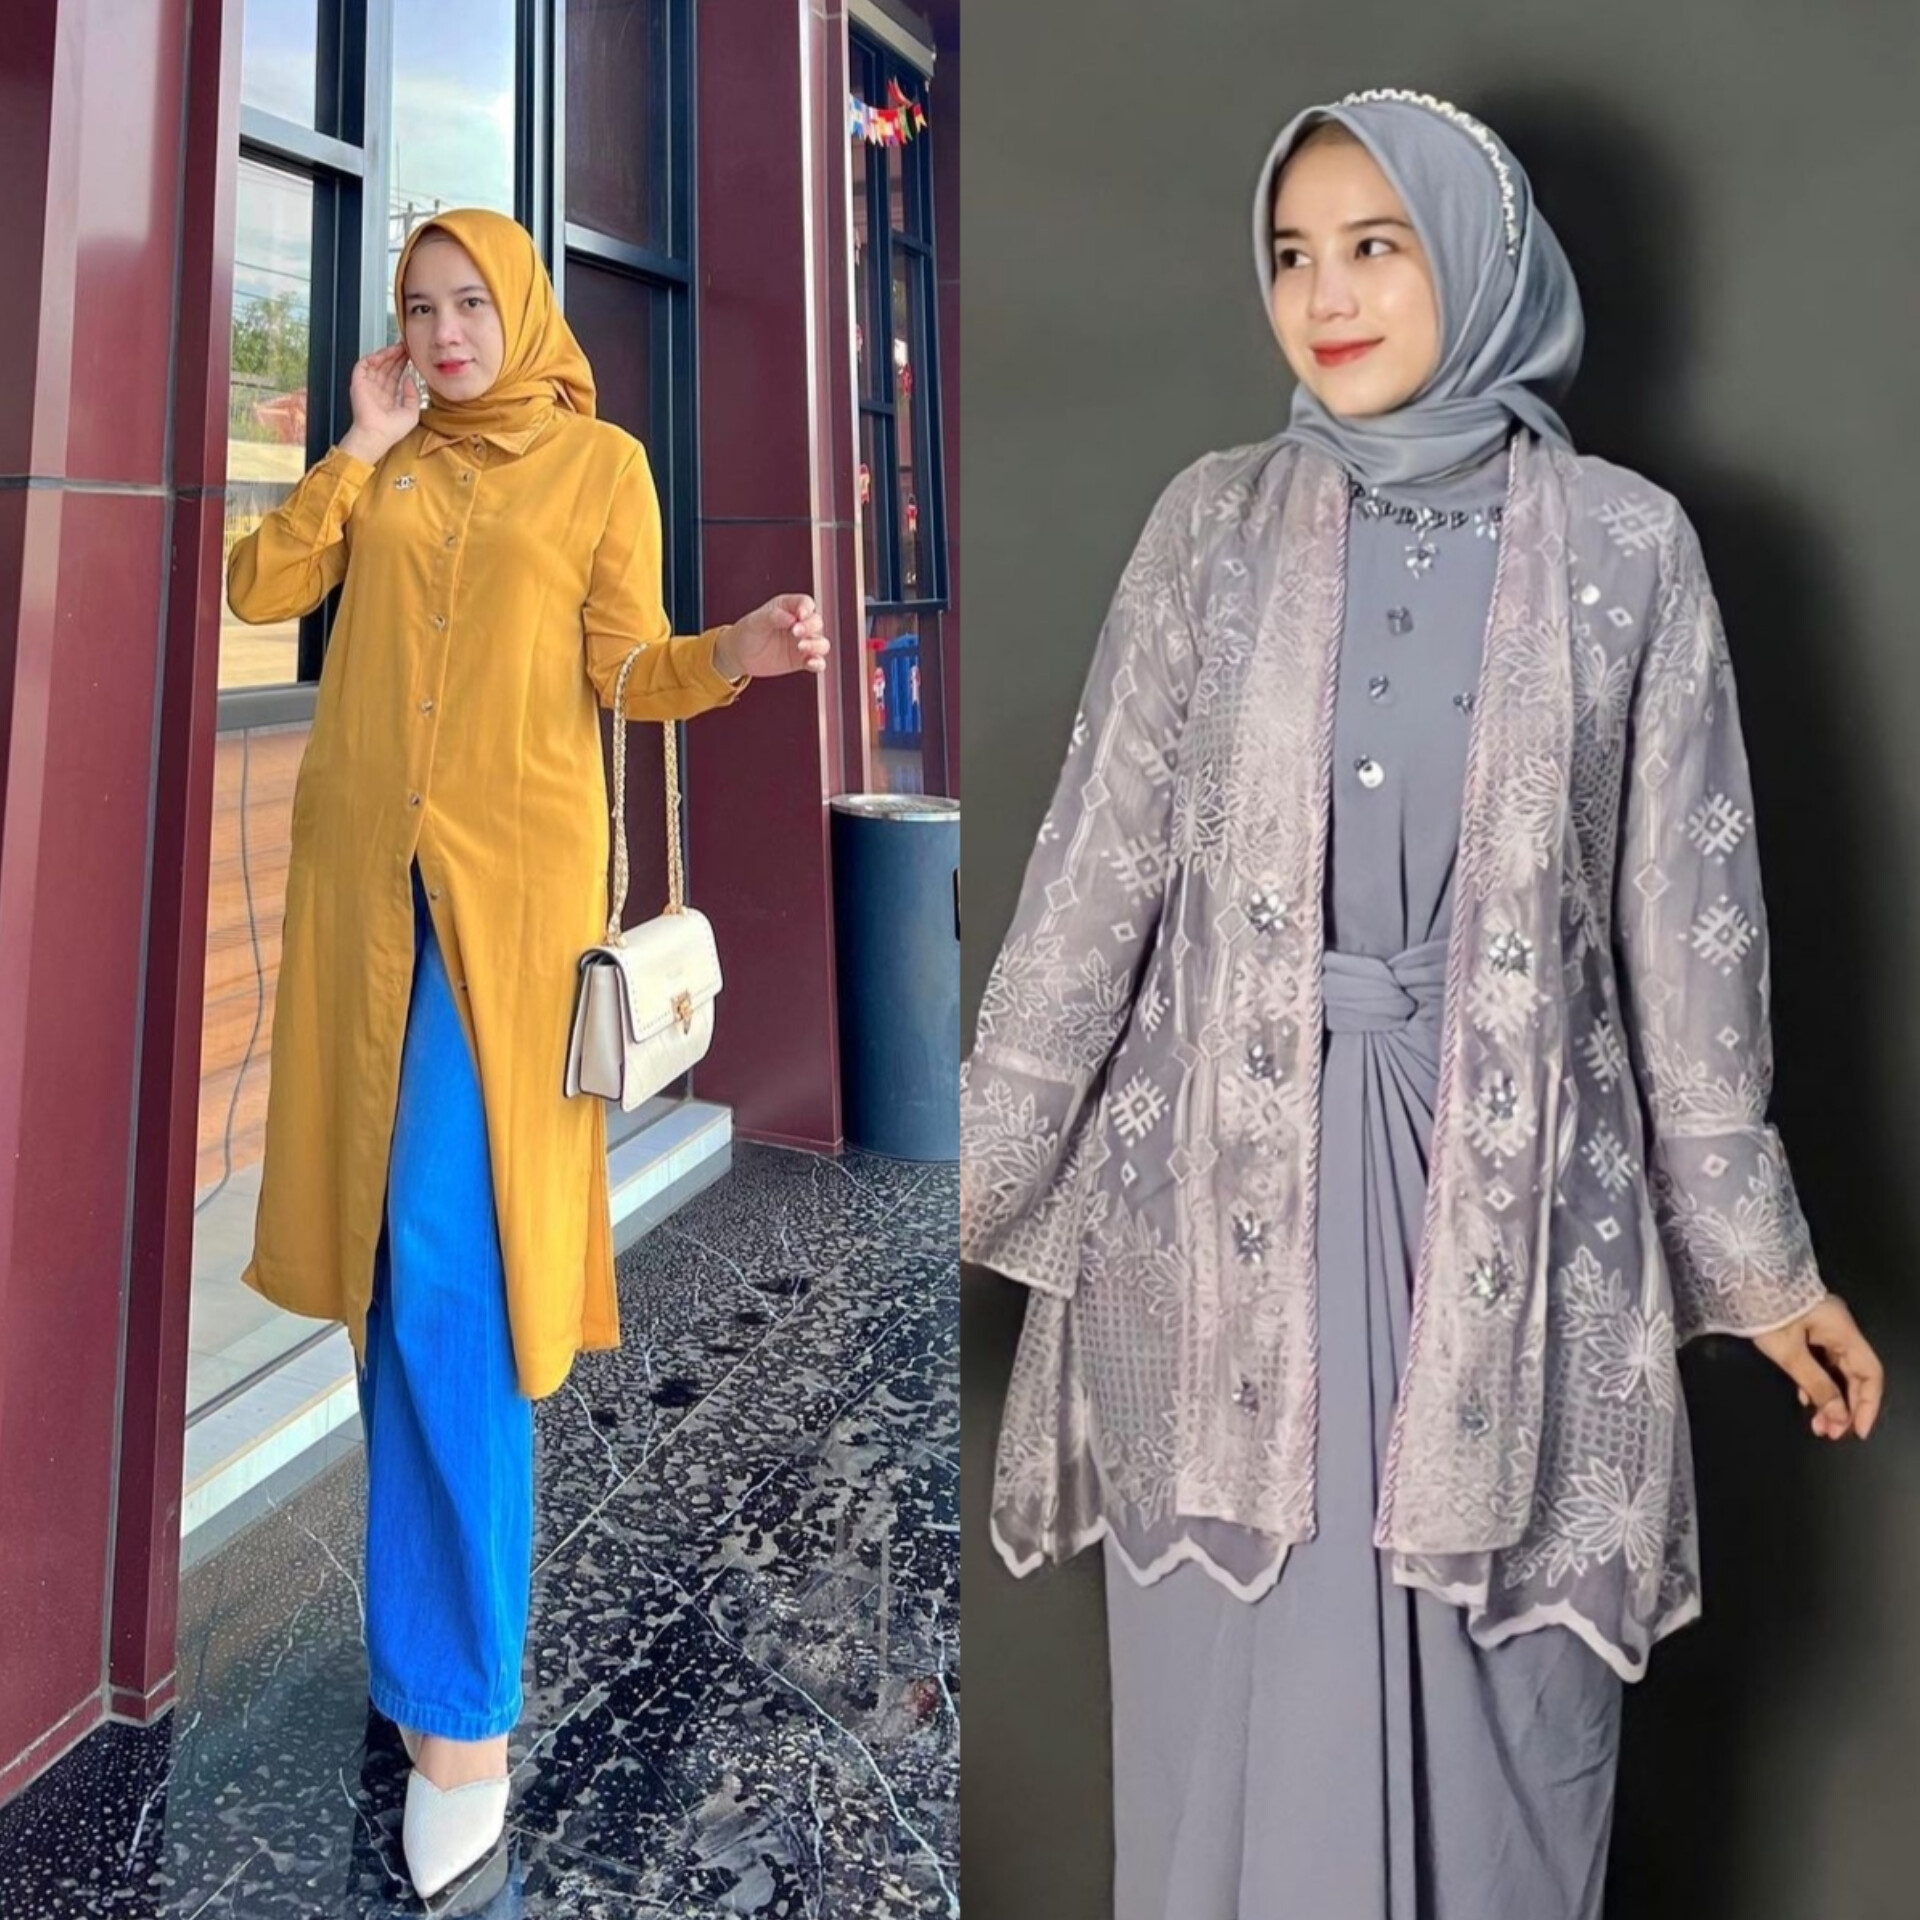 Inspirasi Outfit Menyambut Ramadan yang Stylish dan Kekinian Selain Gamis